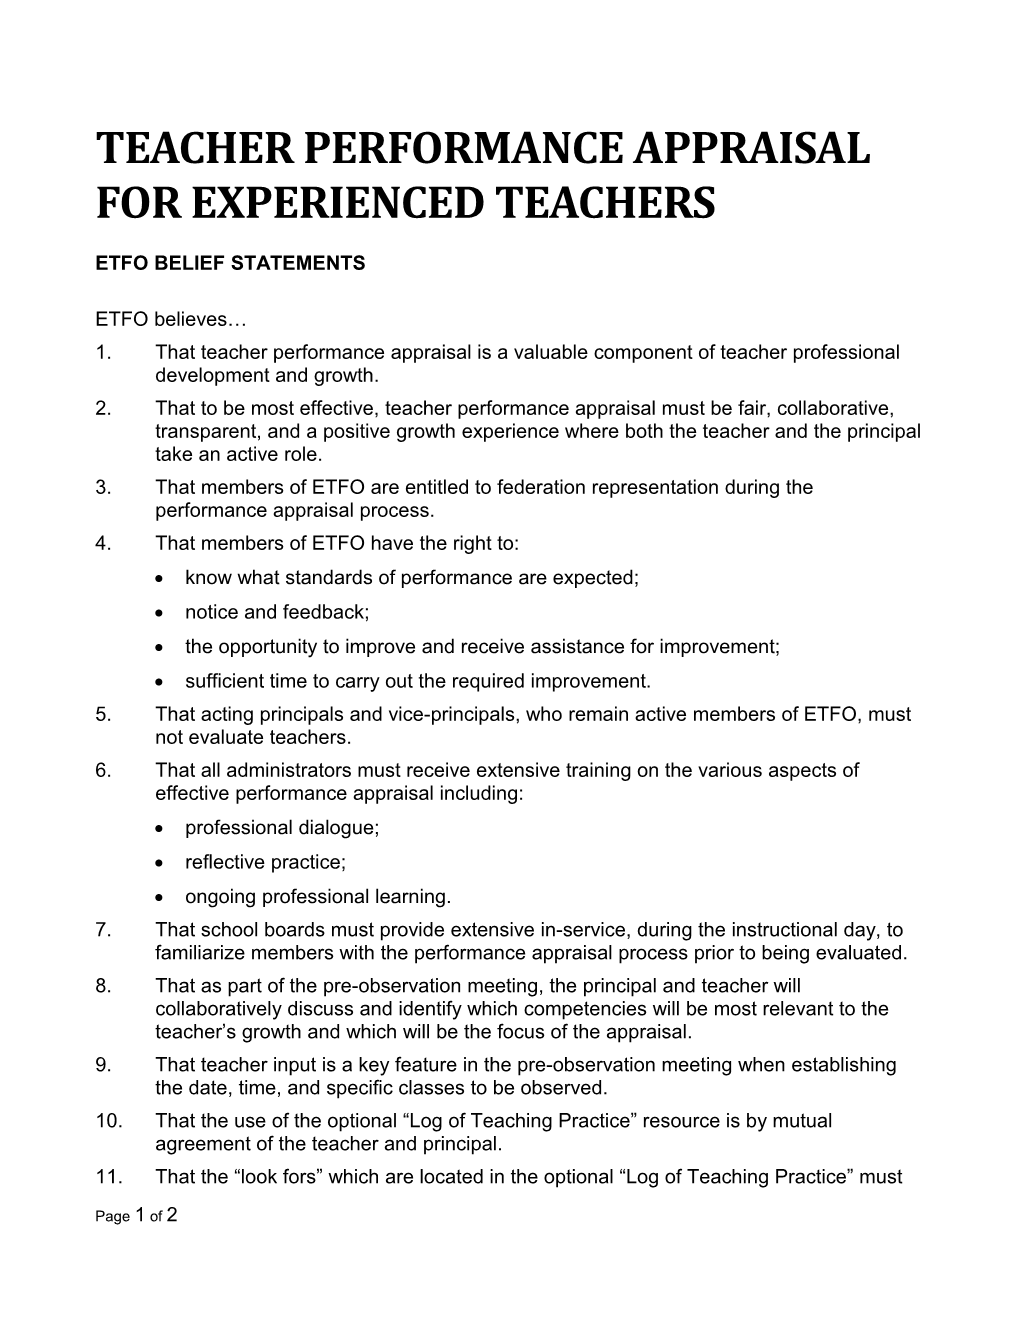 Teacher Performance Appraisal for Experienced Teachers